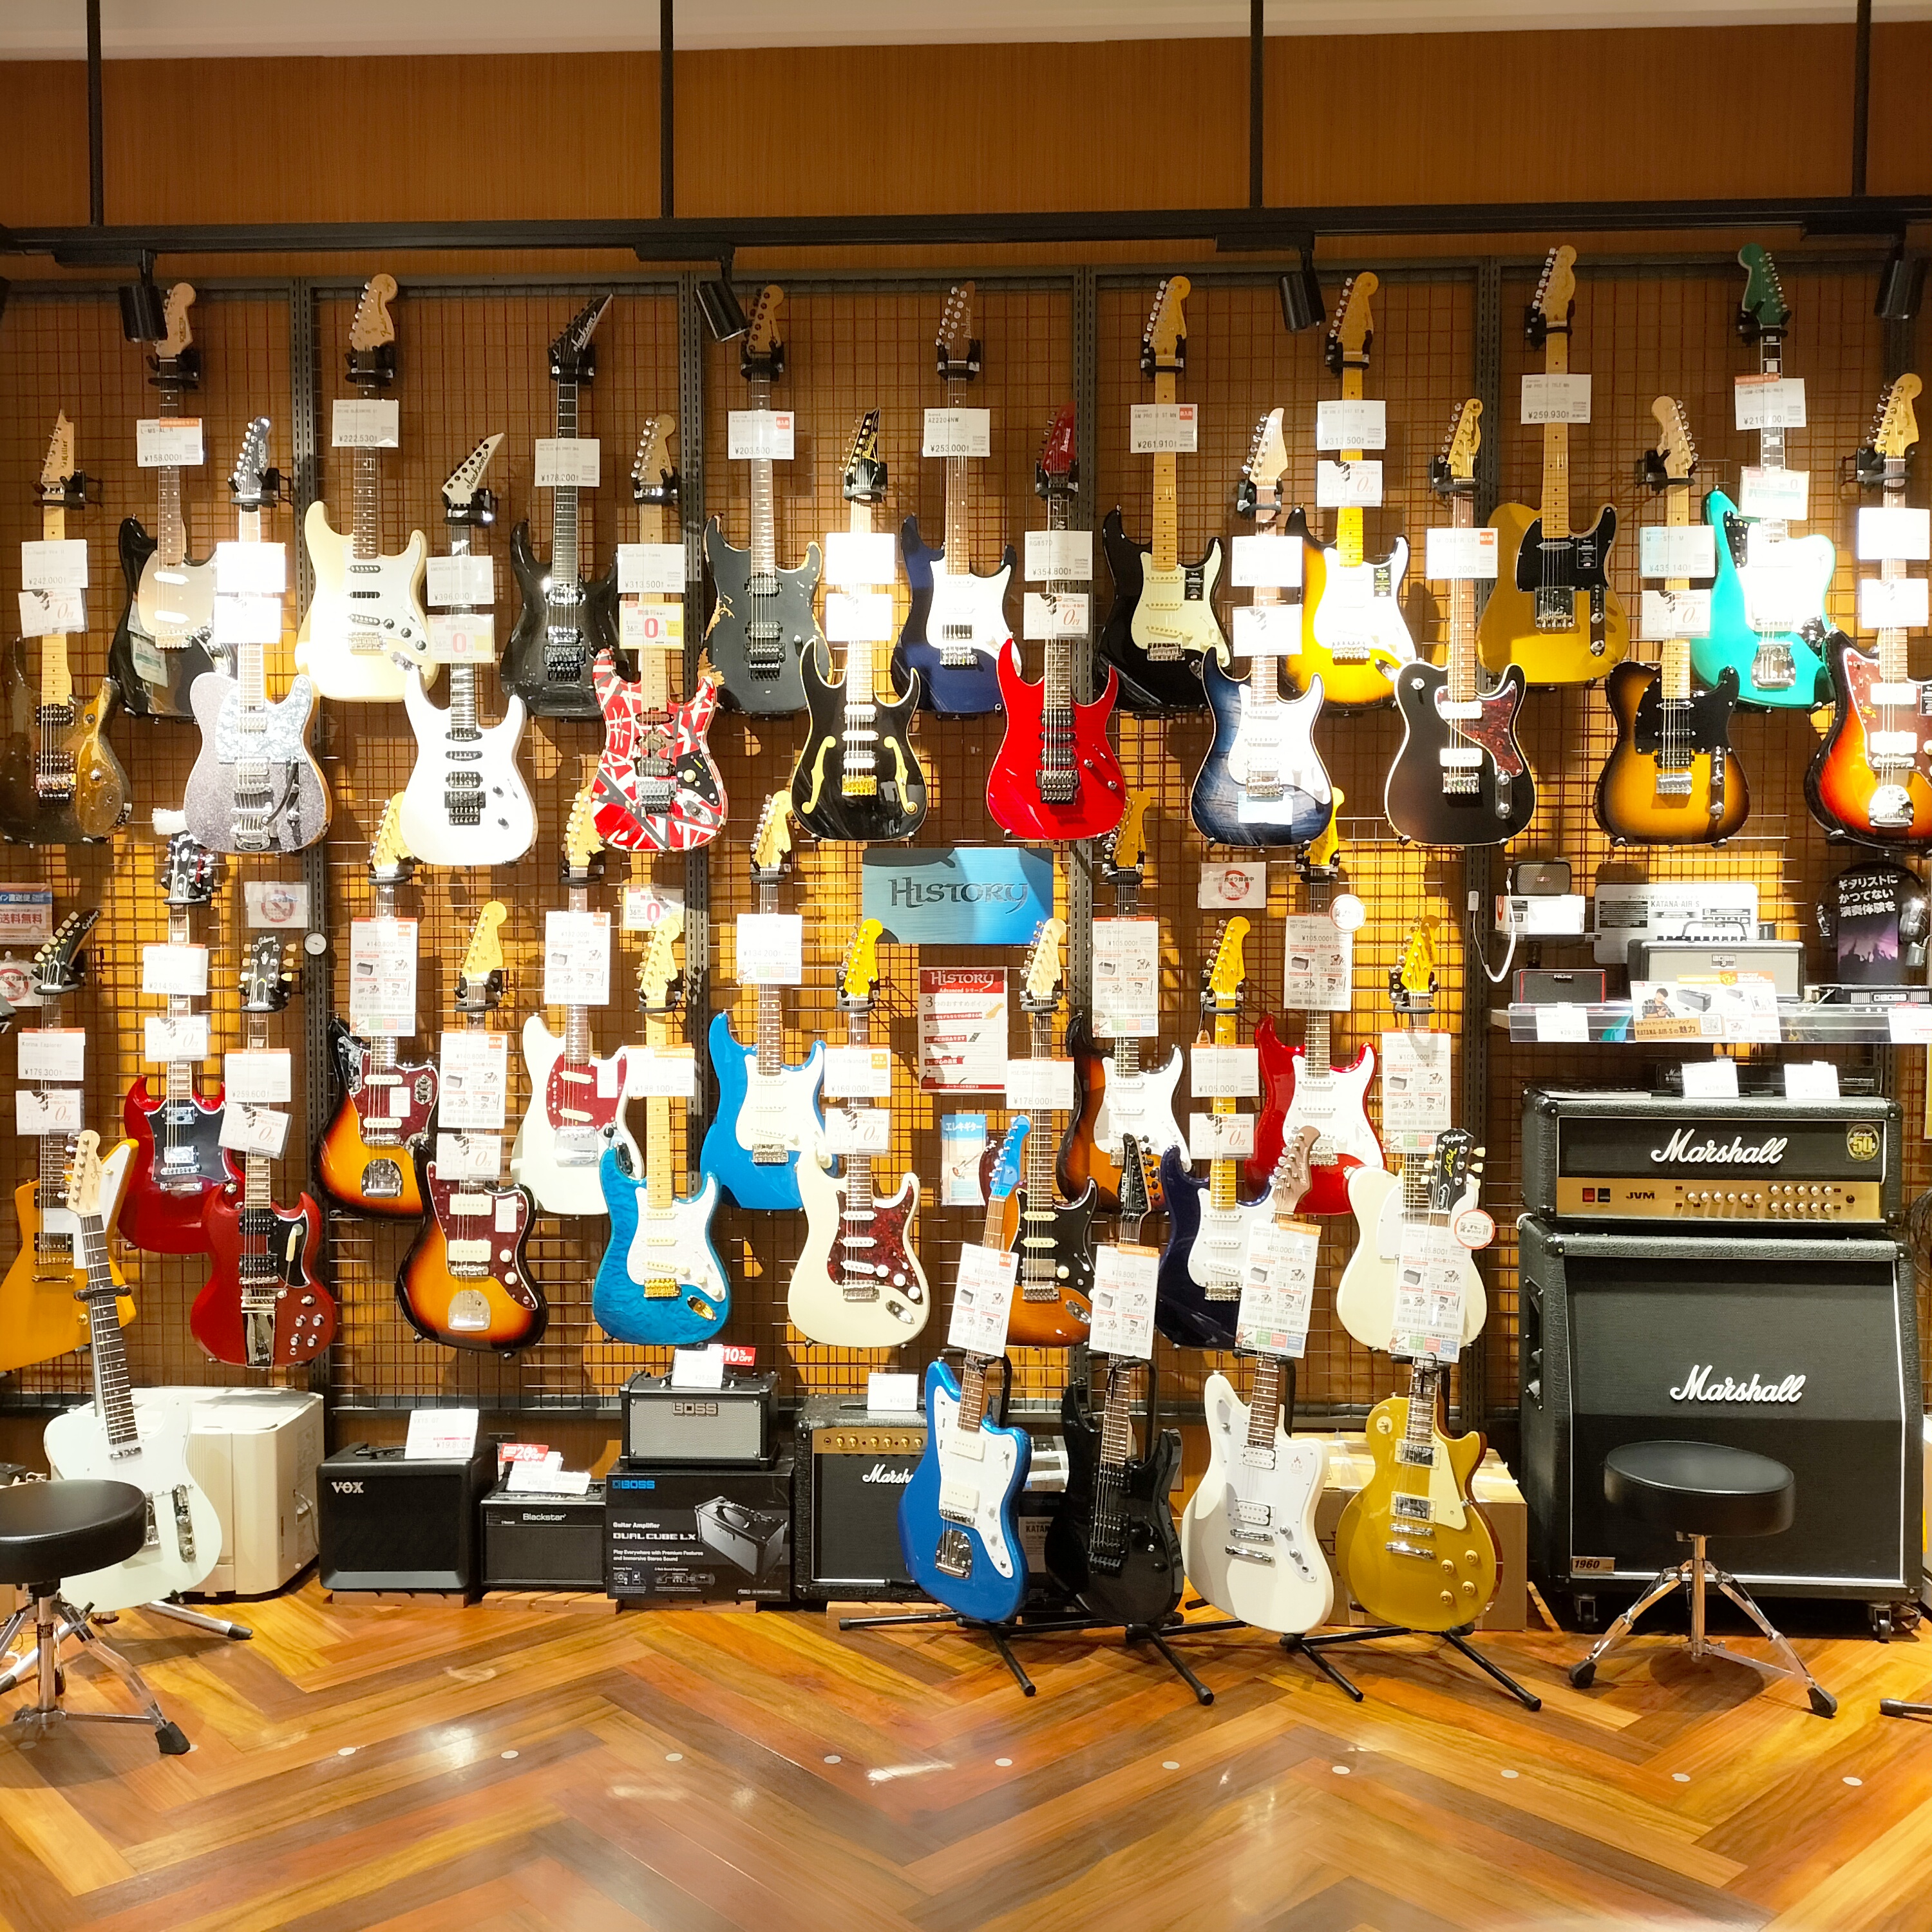 島村楽器イオンモール新利府南館店では新品、中古問わず、たくさんの商品を展示しております。 これからエレキギターを始めたい・・・ 何を選んだらいいかわからない・・・ そんな方にも利府店ではギターアドバイザーが常駐しておりますので初めてのエレキギターとして末永くご愛用いただけるモデルをご紹介致します。  […]